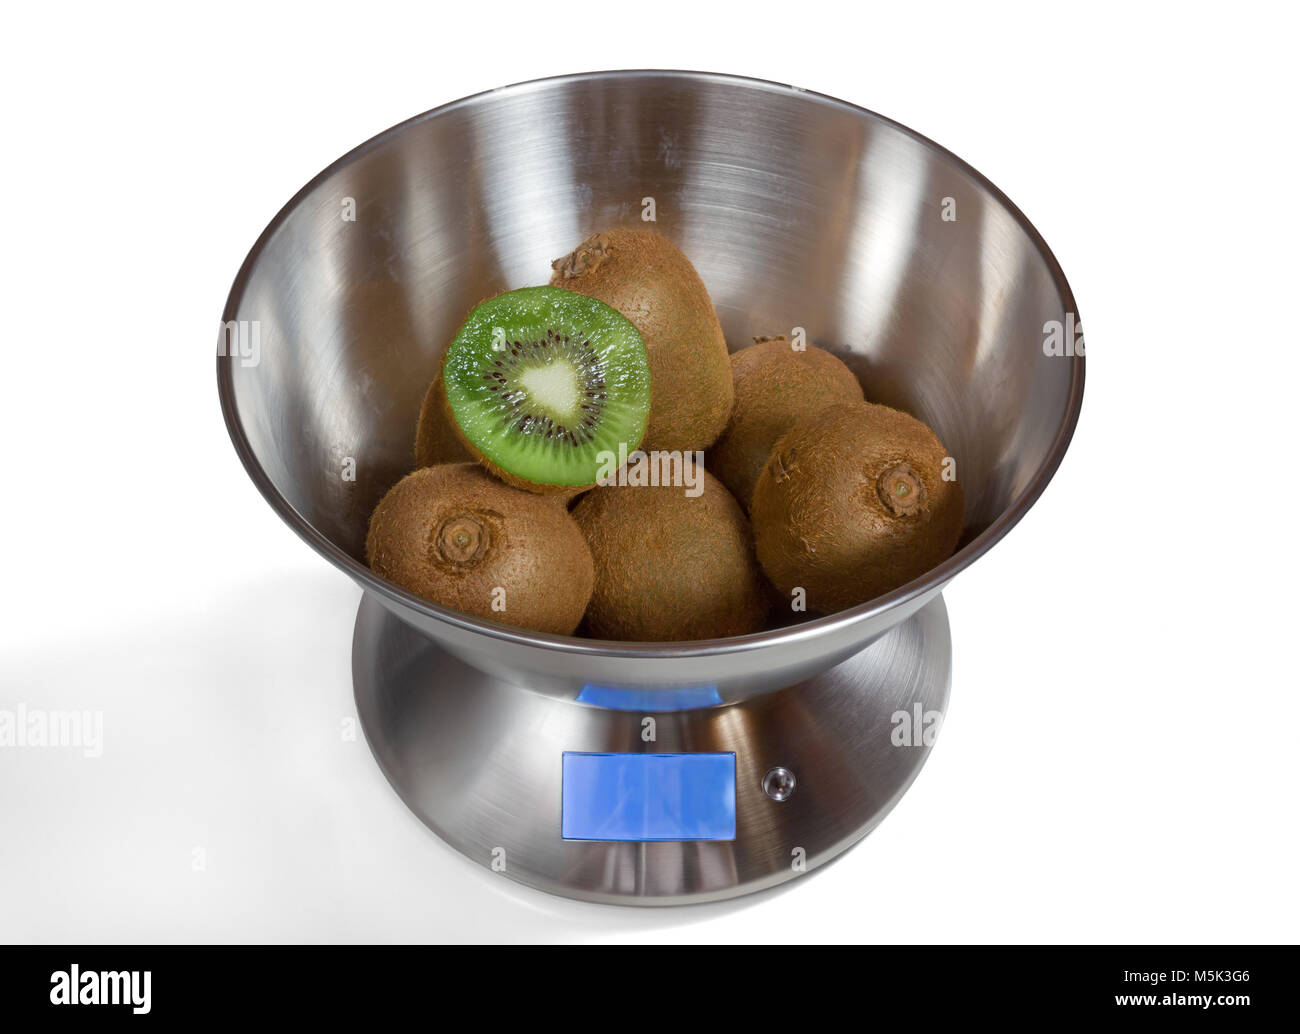 Cuisine moderne métal balances électroniques avec les kiwis Photo Stock -  Alamy